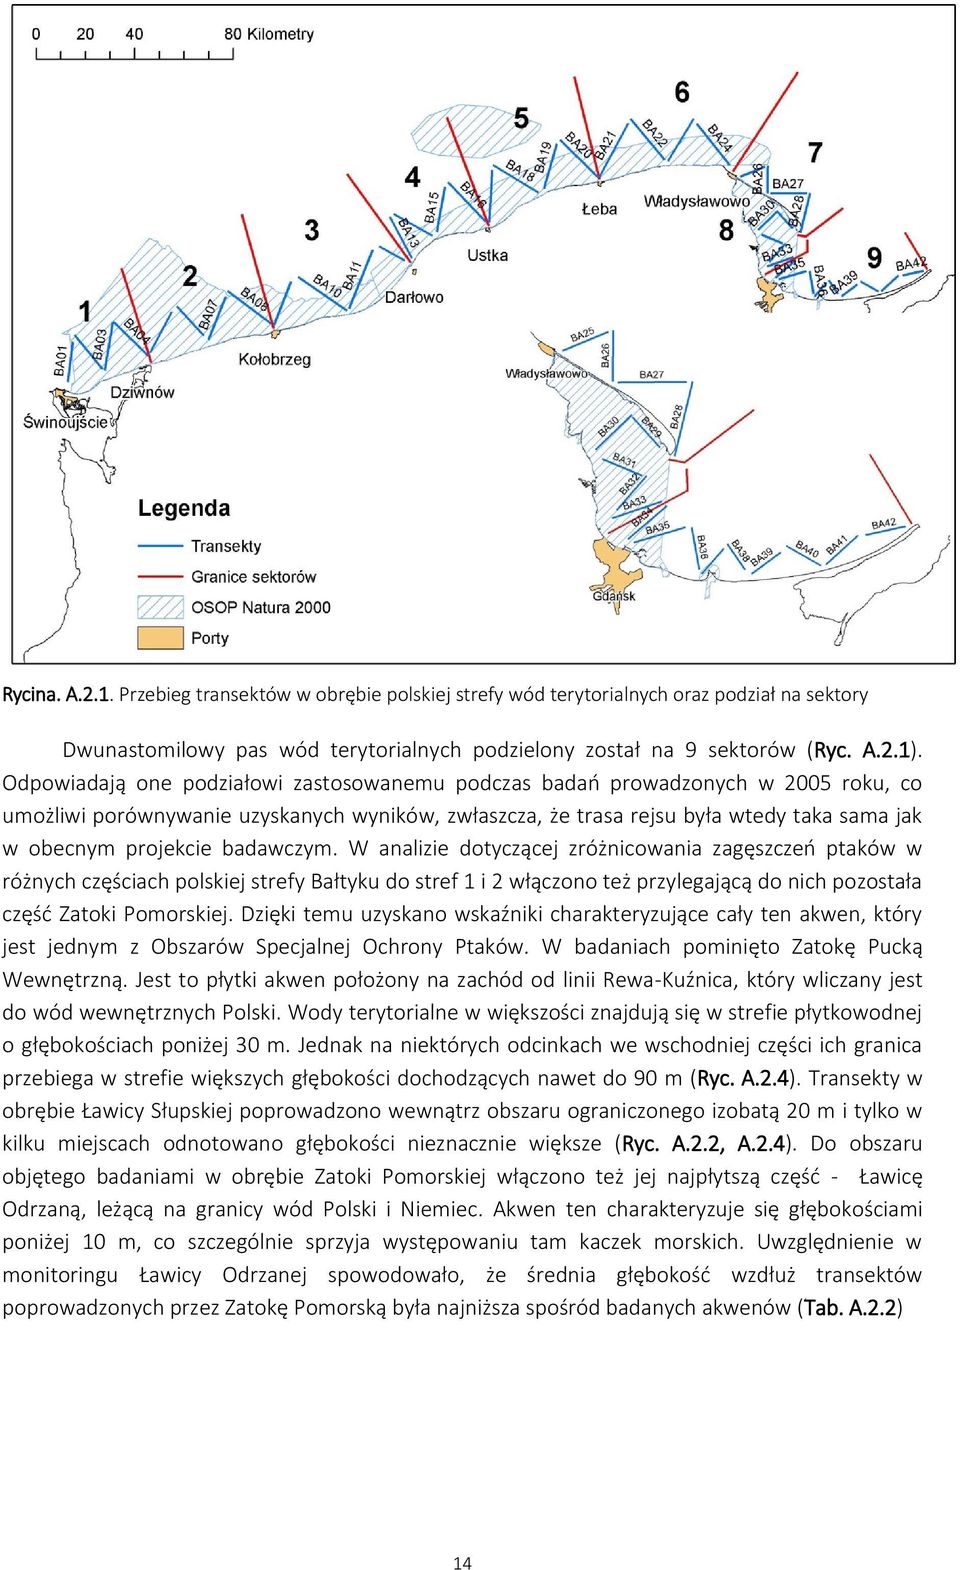 badawczym. W analizie dotyczącej zróżnicowania zagęszczeń ptaków w różnych częściach polskiej strefy Bałtyku do stref 1 i 2 włączono też przylegającą do nich pozostała część Zatoki Pomorskiej.